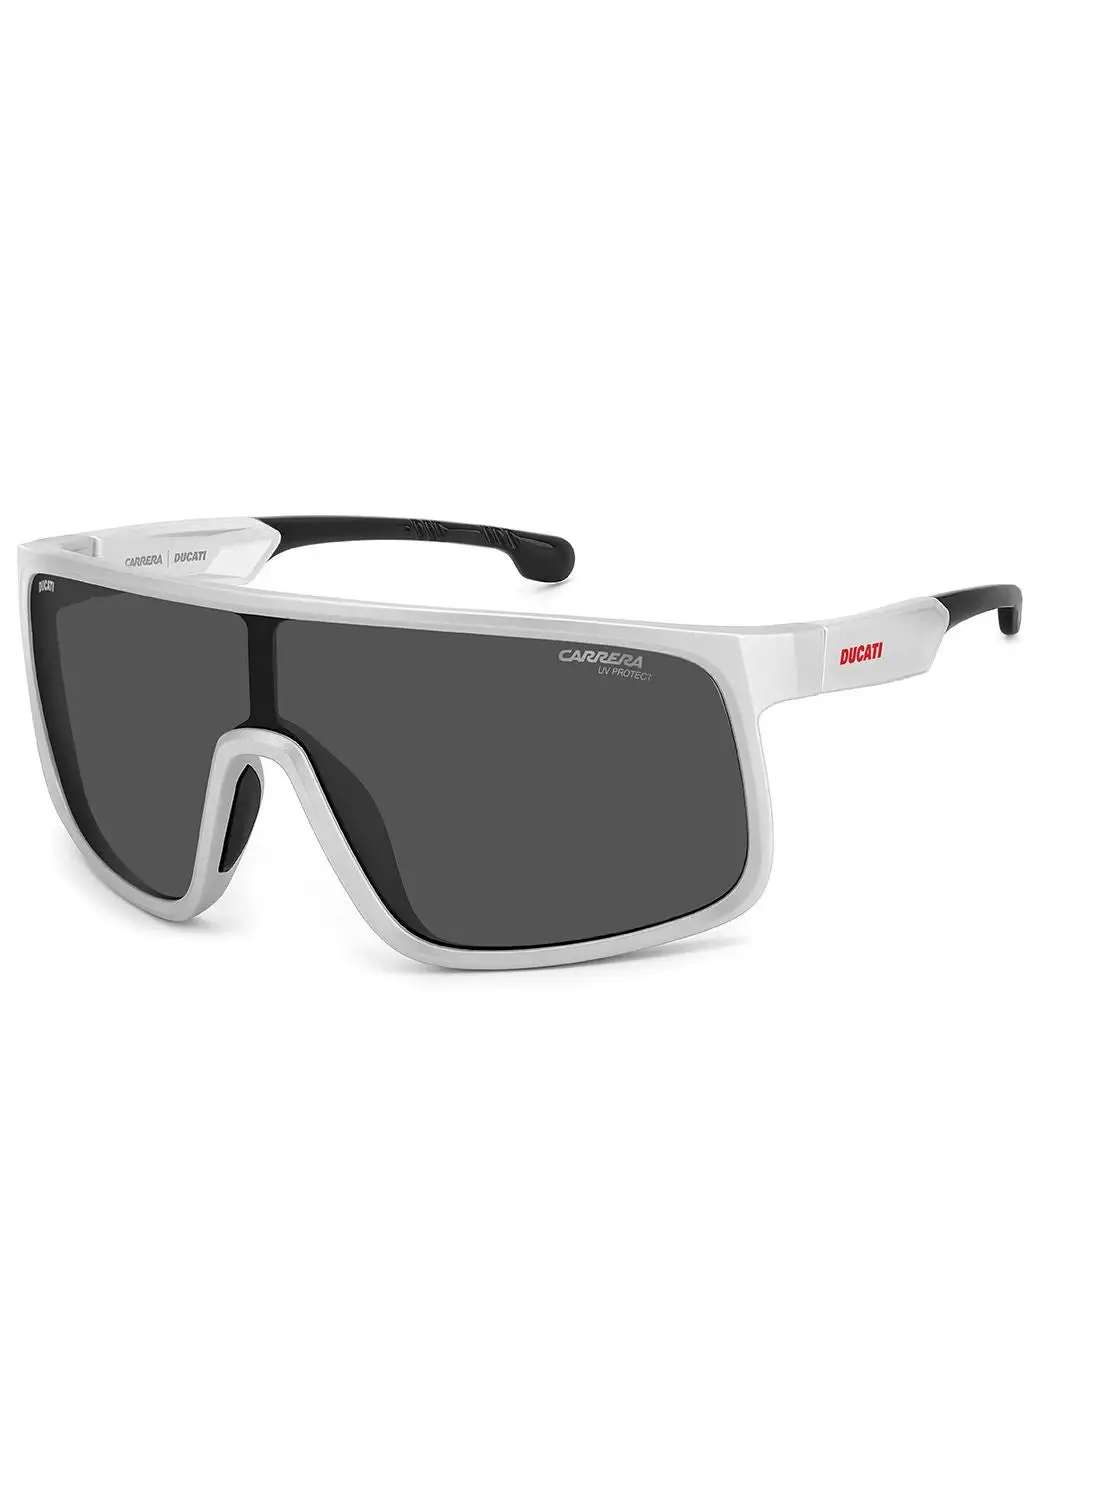 نظارة كاريرا للرجال للحماية من الأشعة فوق البنفسجية - Carduc 017/S Mattwhite 99 - مقاس العدسة: 99 ملم